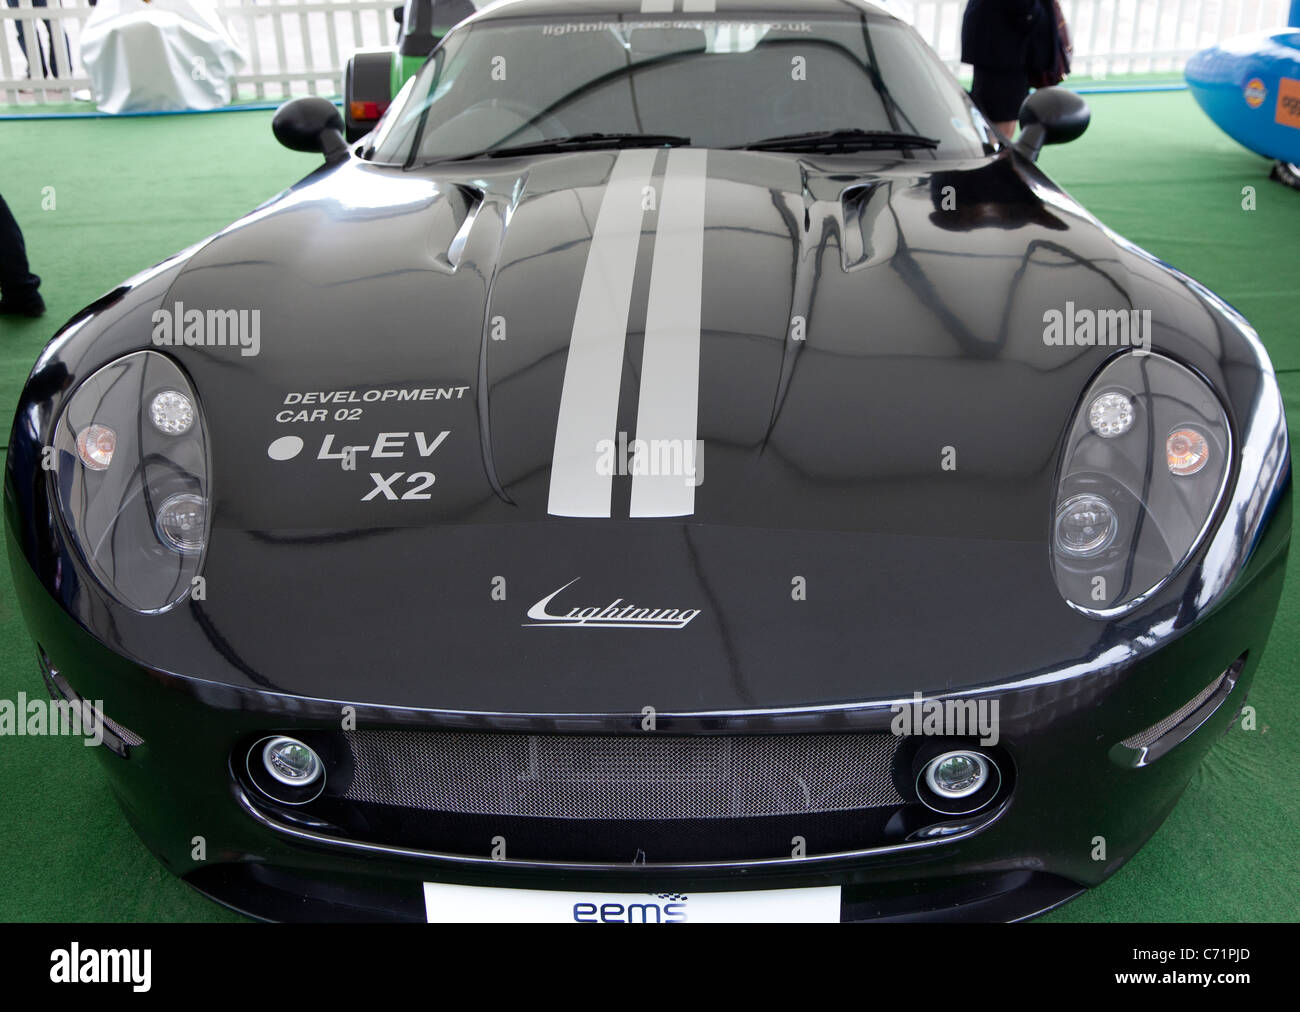 Ecovelocity motor festival Londra - fulmini GT supercar elettrica auto sviluppo 02 Foto Stock